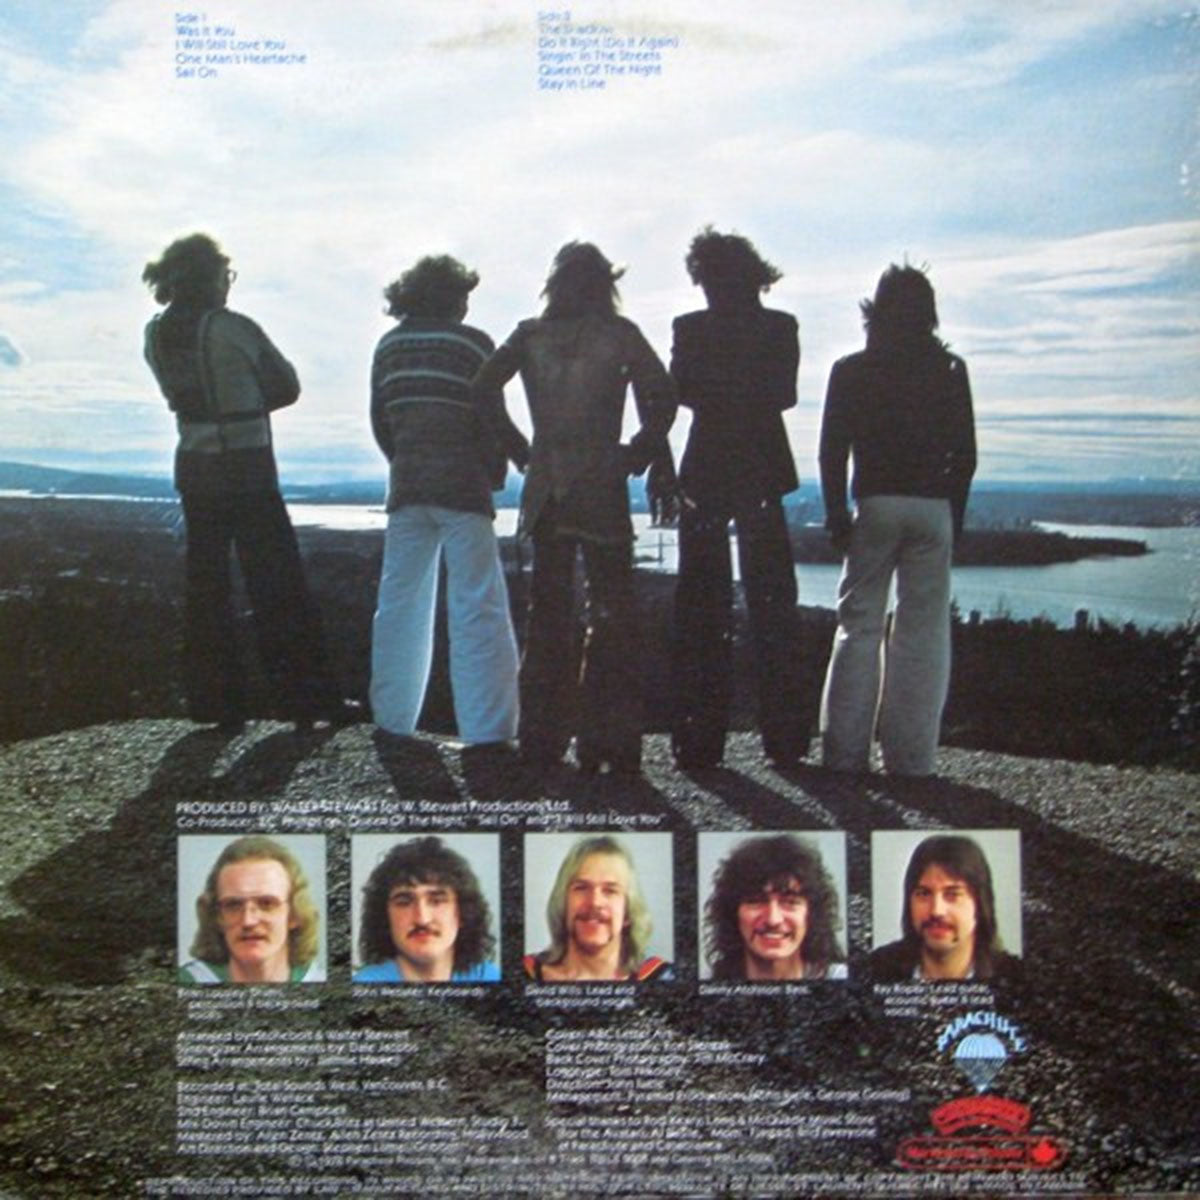 Stonebolt – Stonebolt - 1978